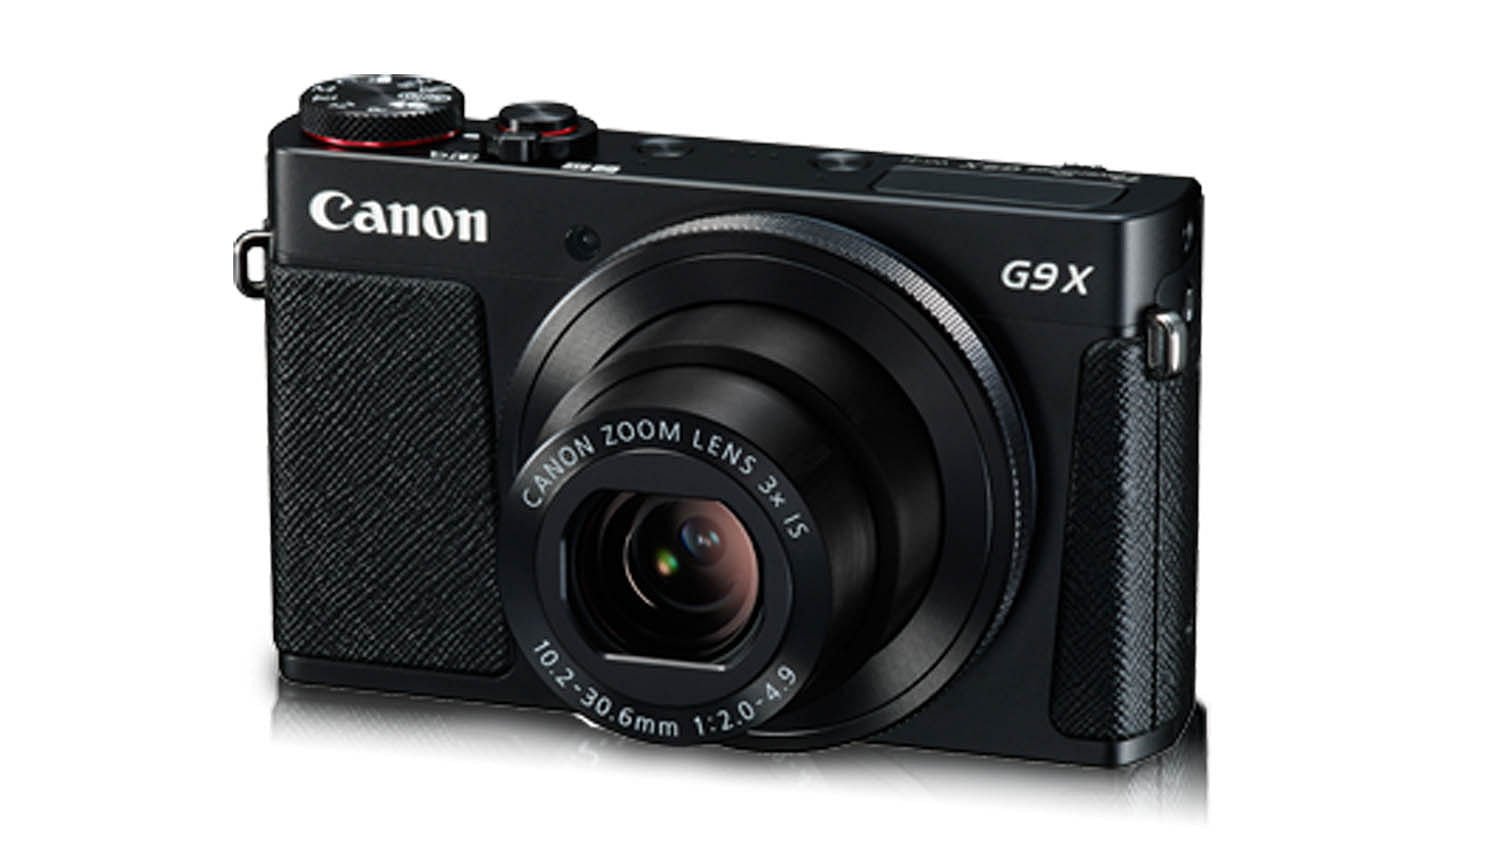 Canon G9 X camera. (Photo: Canon)